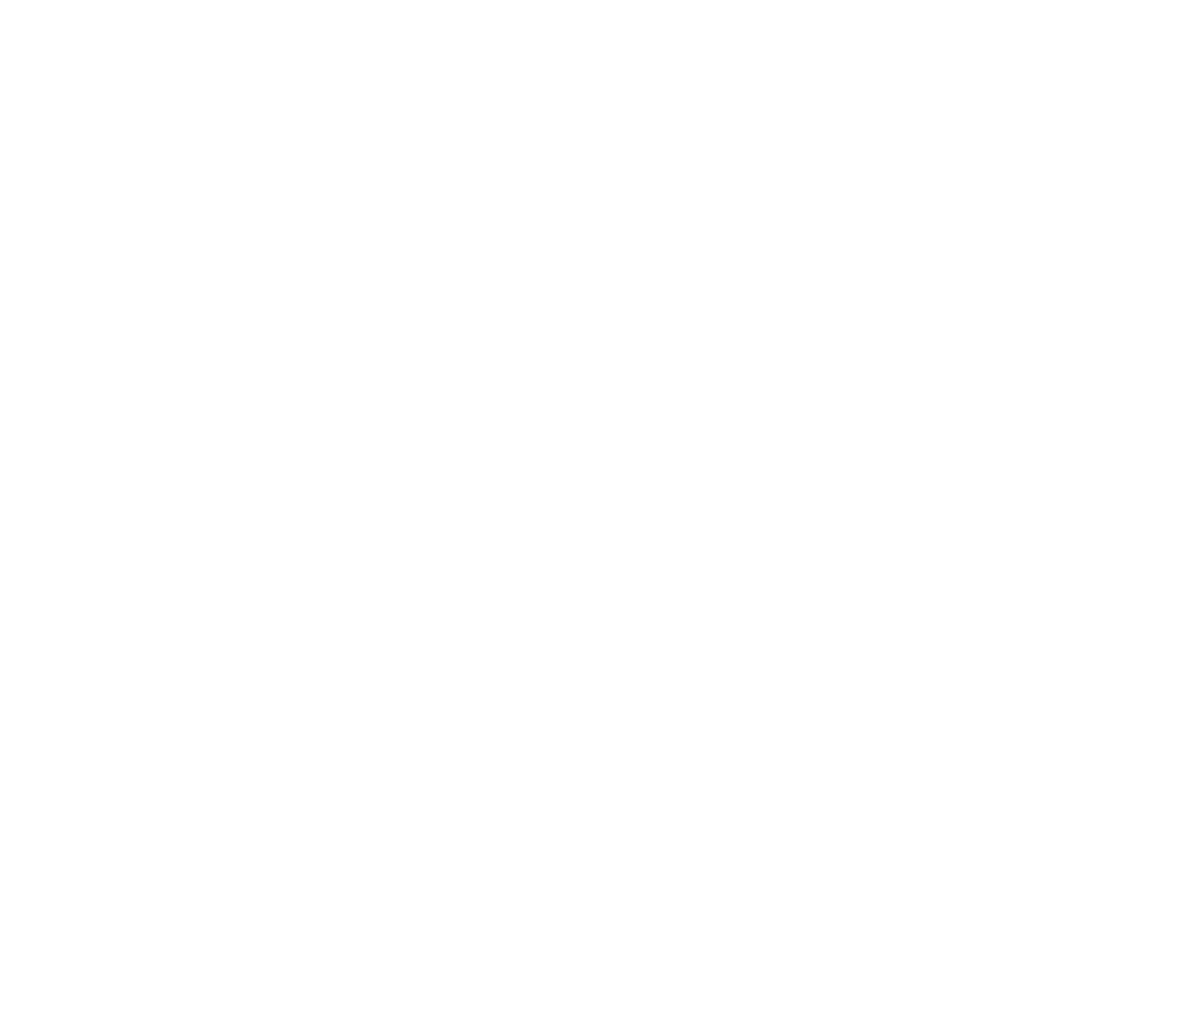 Suomalainen Menestysresepti 2021 - Foodin